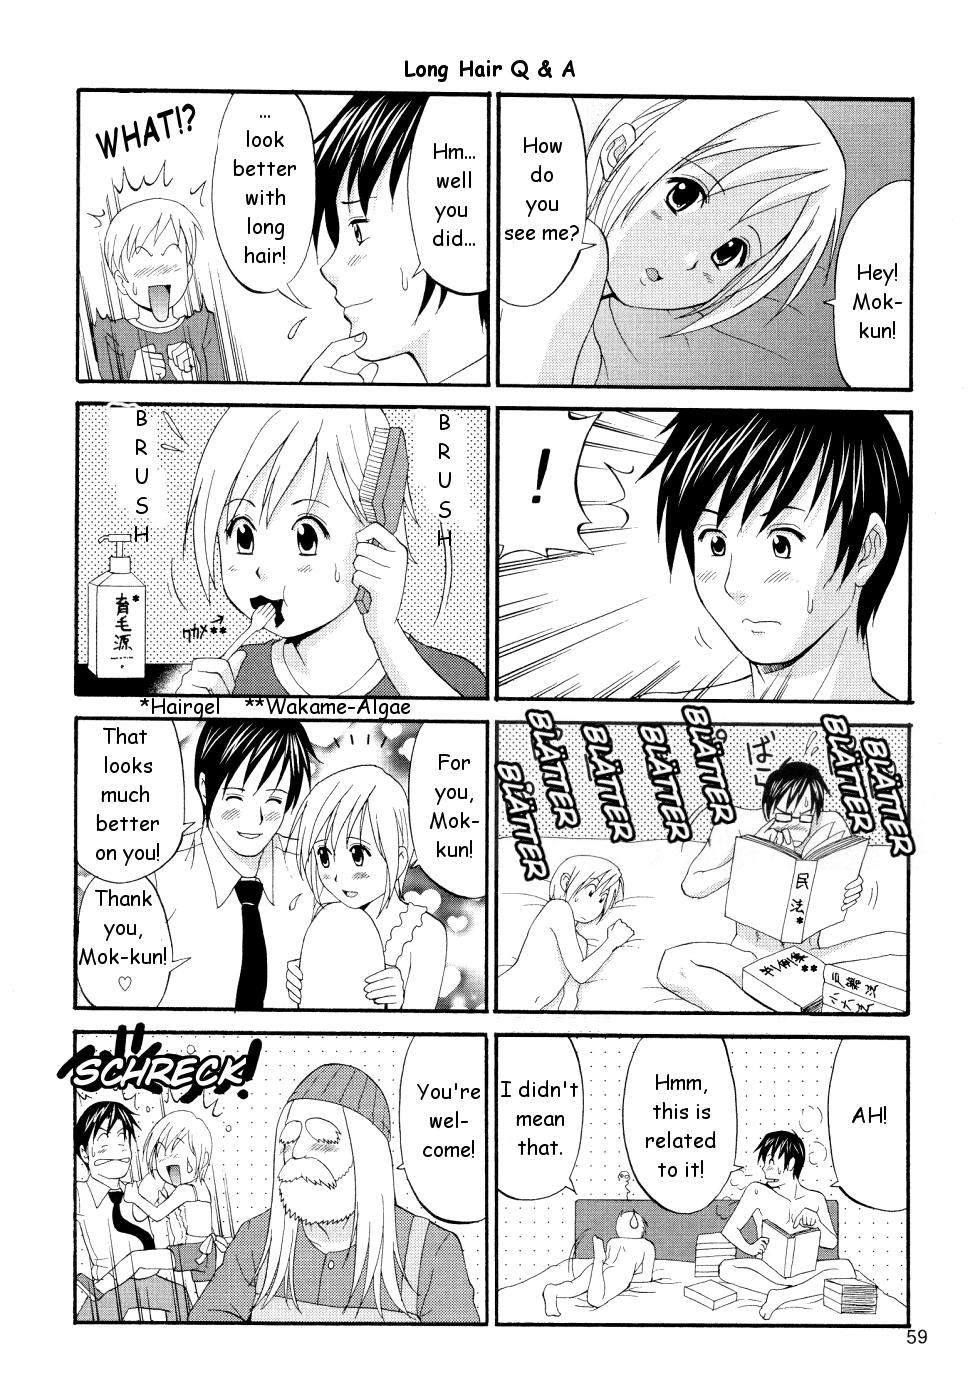 Money Boku no Pico Comic + Koushiki Character Genanshuu - Boku no pico Gaybukkake - Page 59